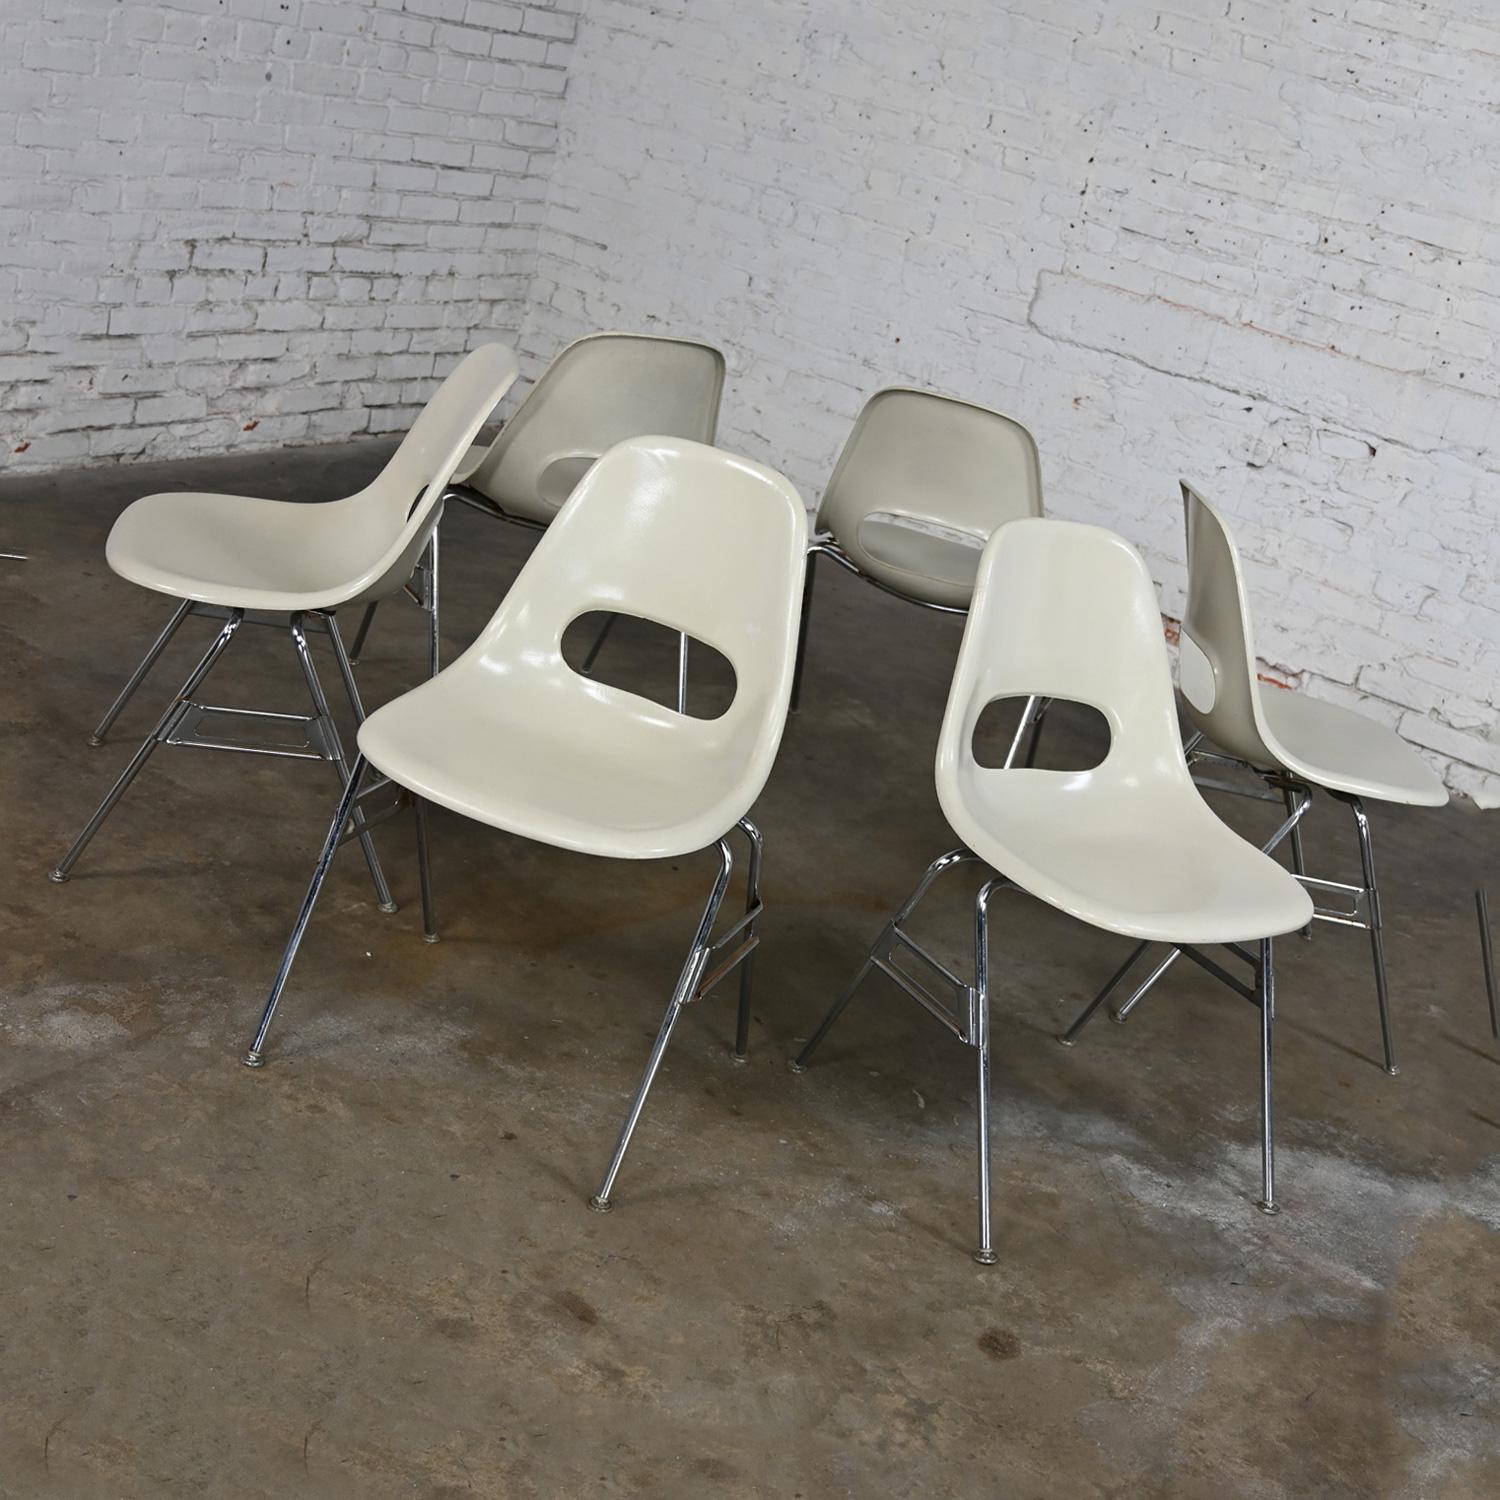 Superbe ensemble de 6 chaises empilables Krueger International en fibre de verre blanc moulé et base en tube chromé. Très bon état, en gardant à l'esprit qu'il s'agit de chaises vintage et non pas neuves et qu'elles présenteront donc des signes